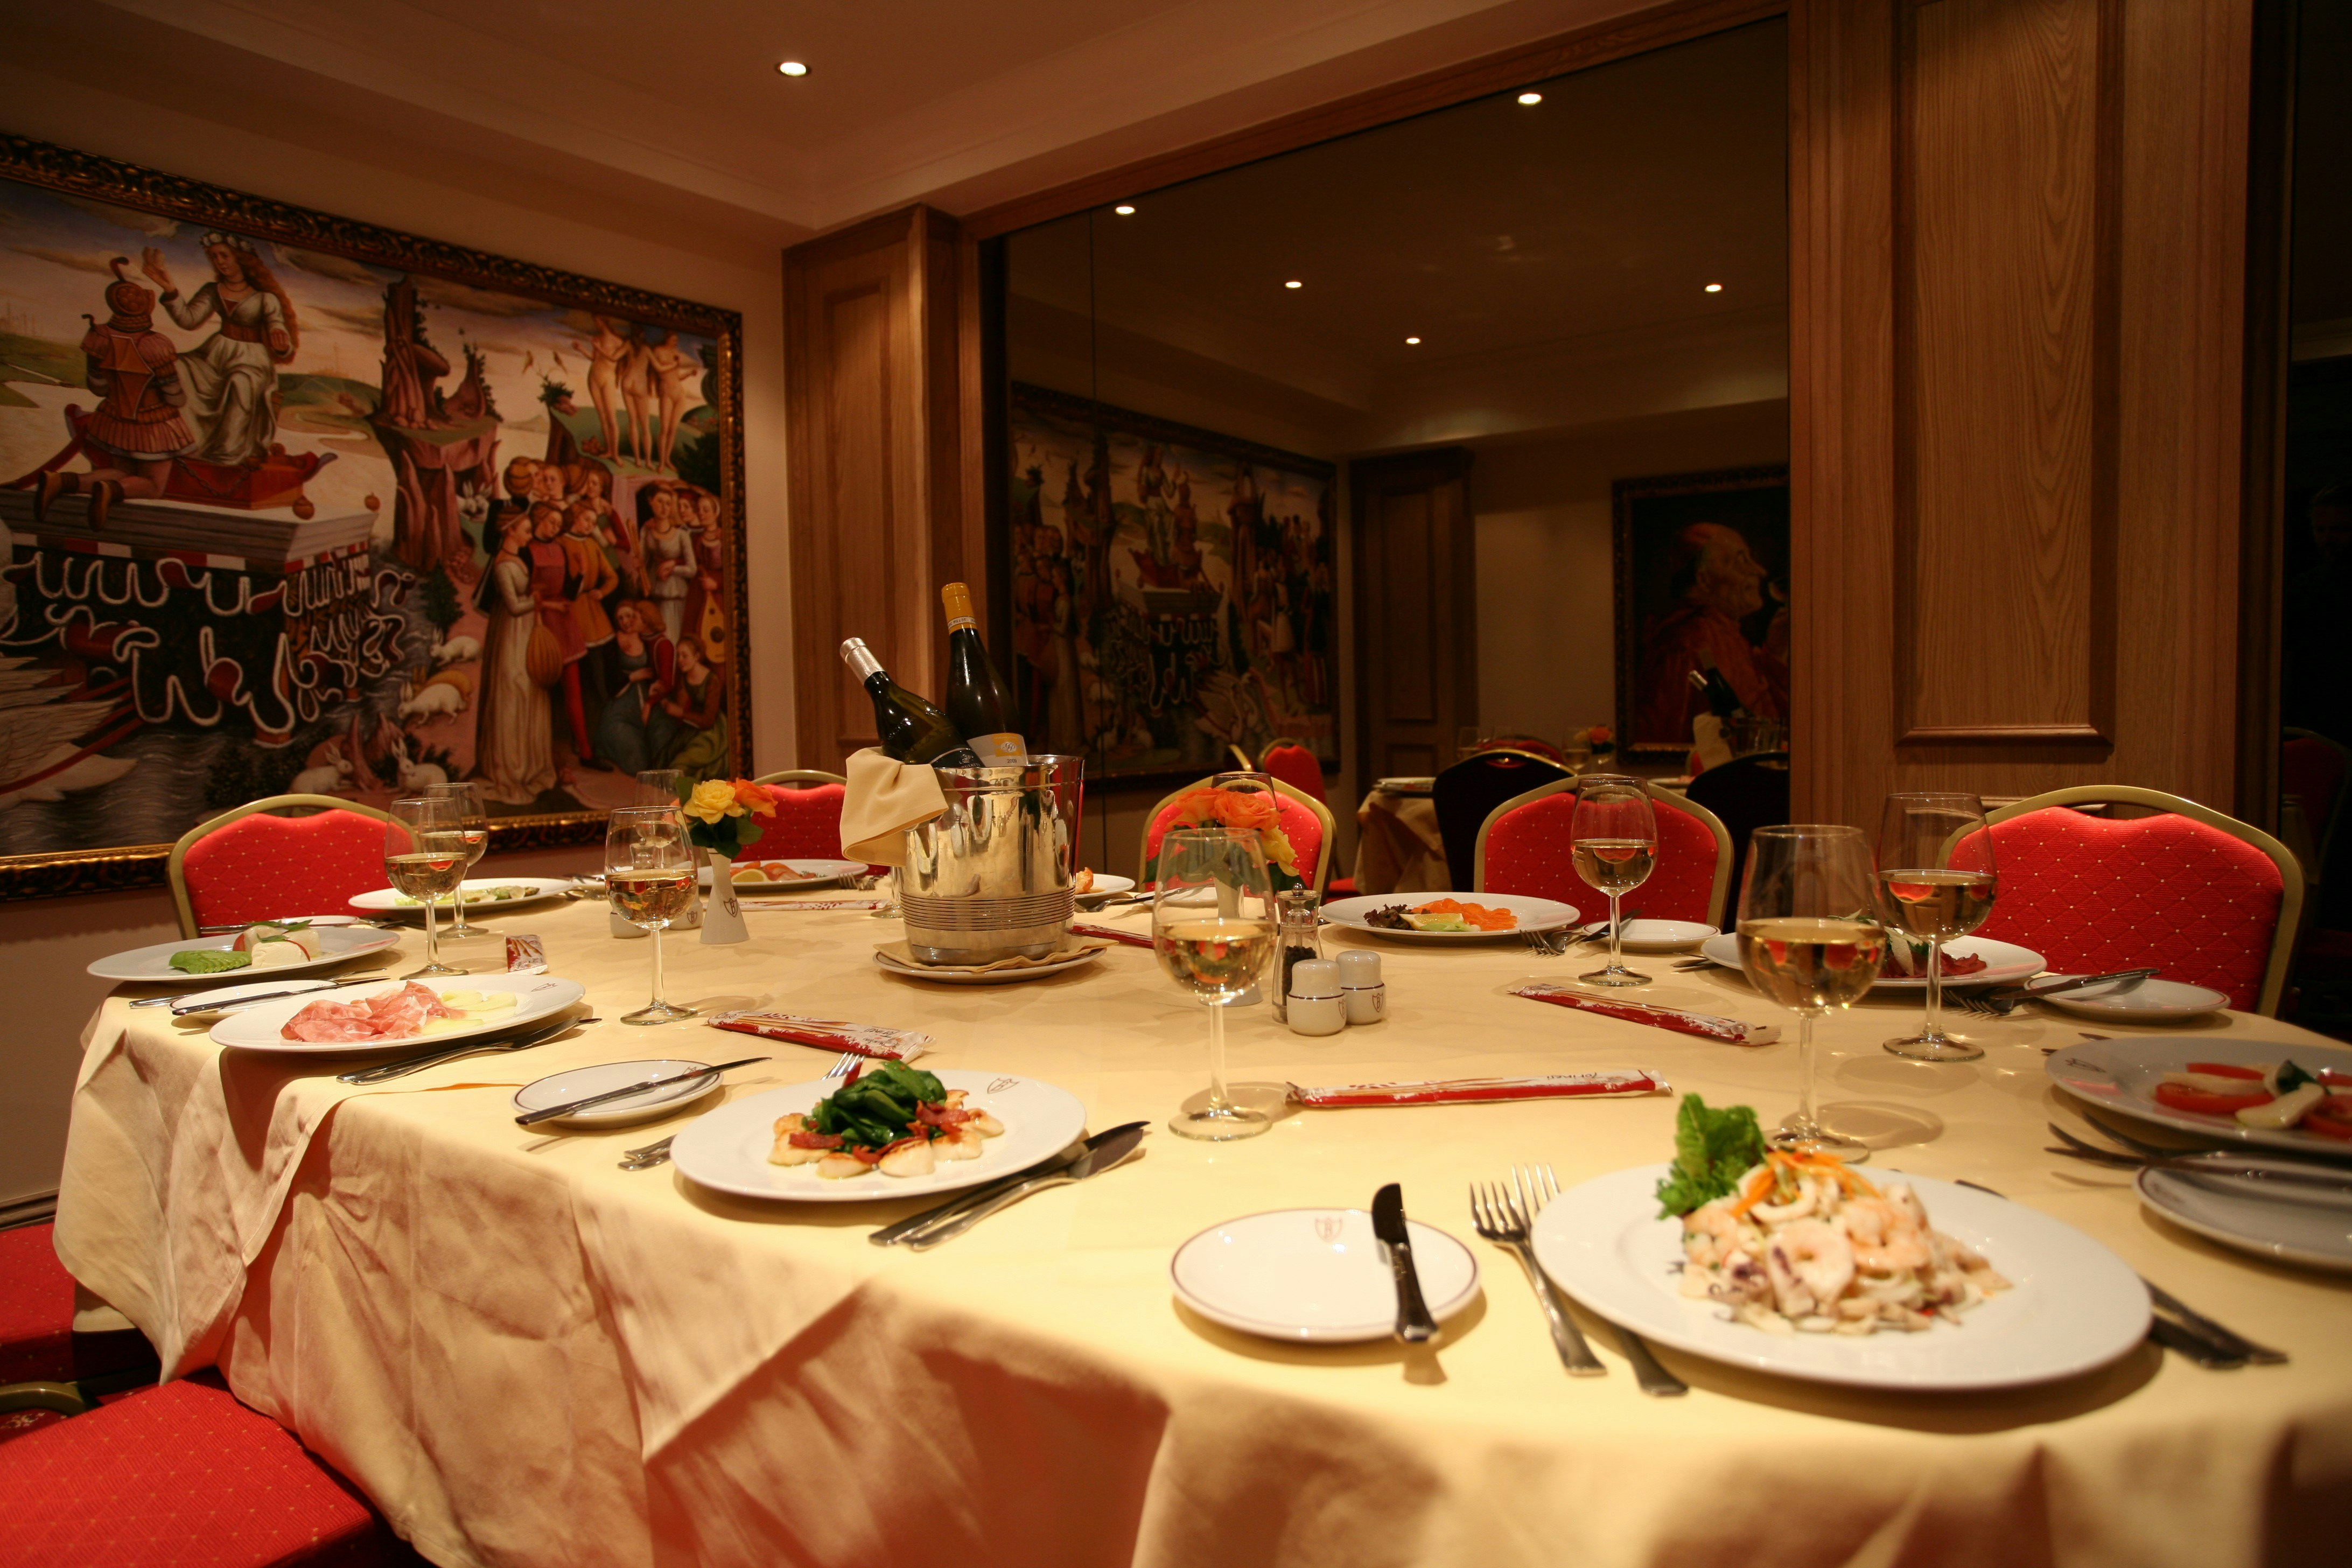 Bolton's Restaurant - Venetian Room image 7